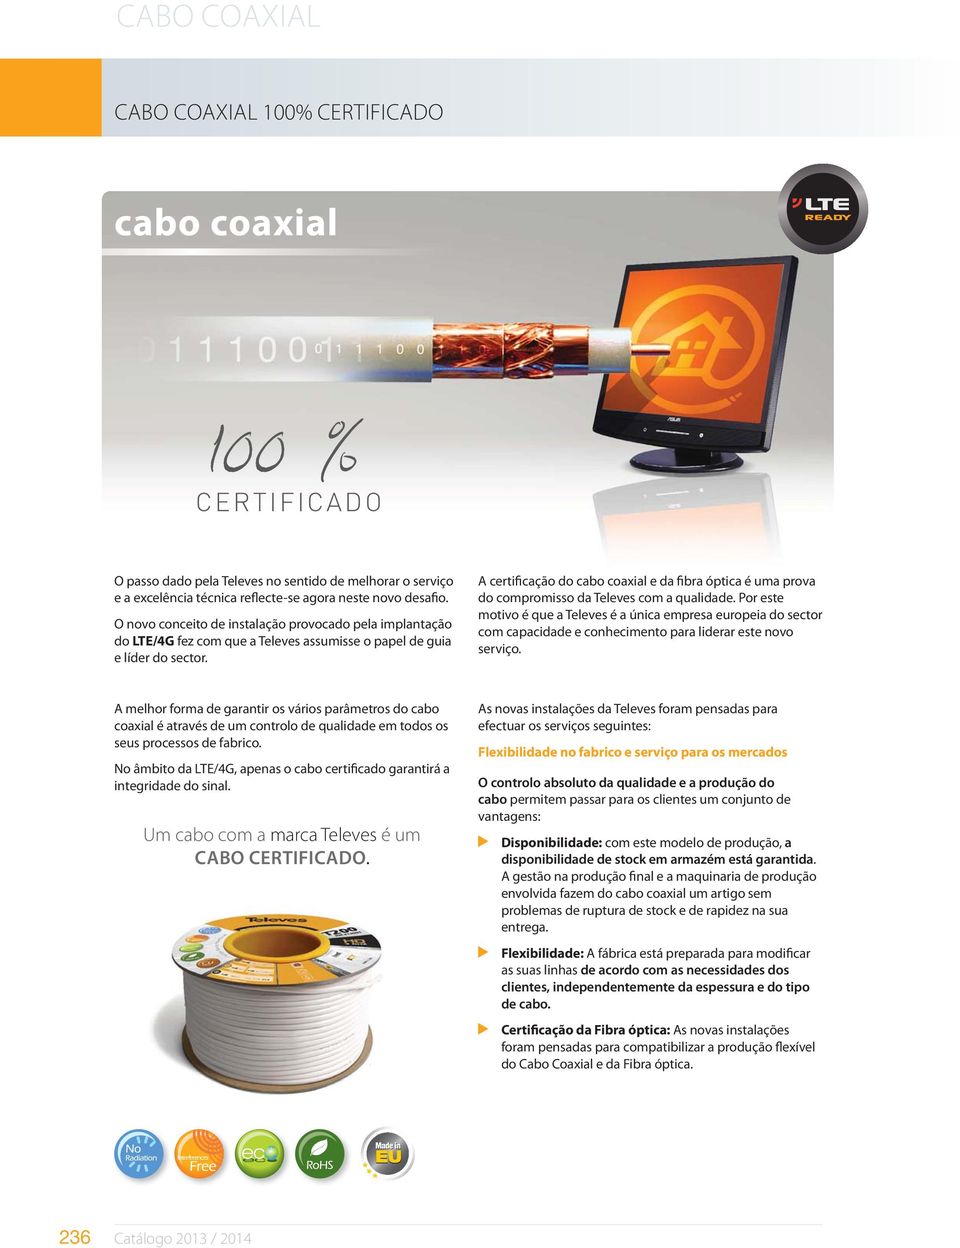 A certificação do cabo coaxial e da fibra óptica é uma prova do compromisso da Televes com a qualidade.